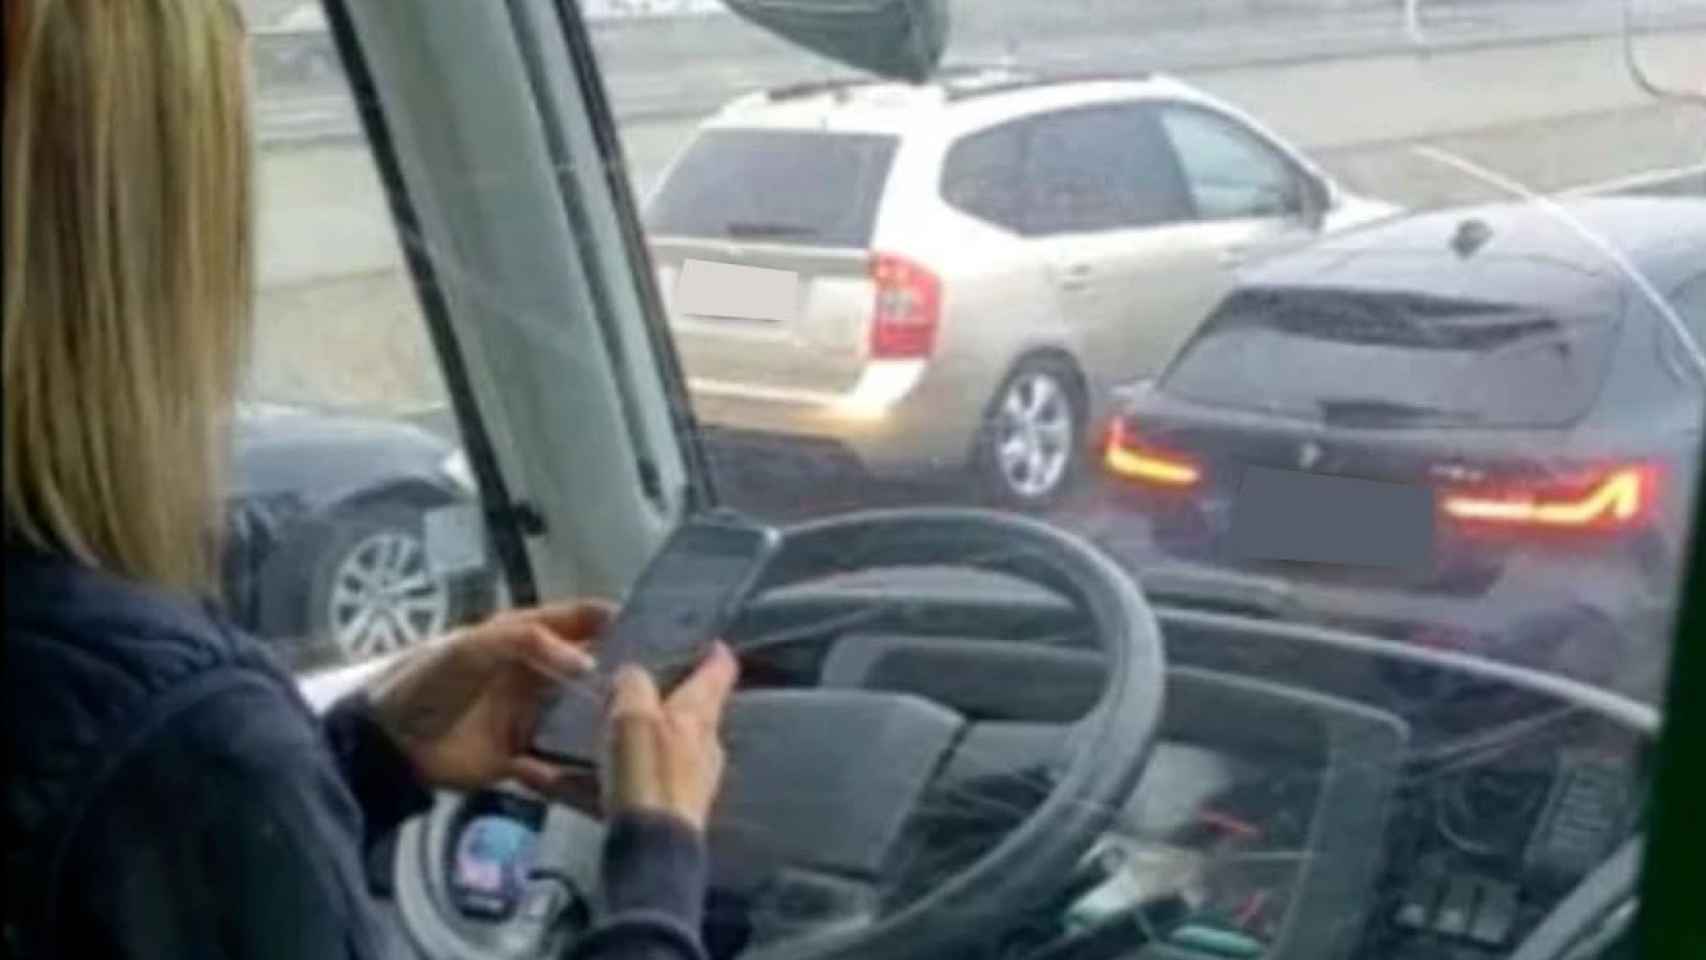 Imagen de la autobusera utilizando el móvil mientras conducía.